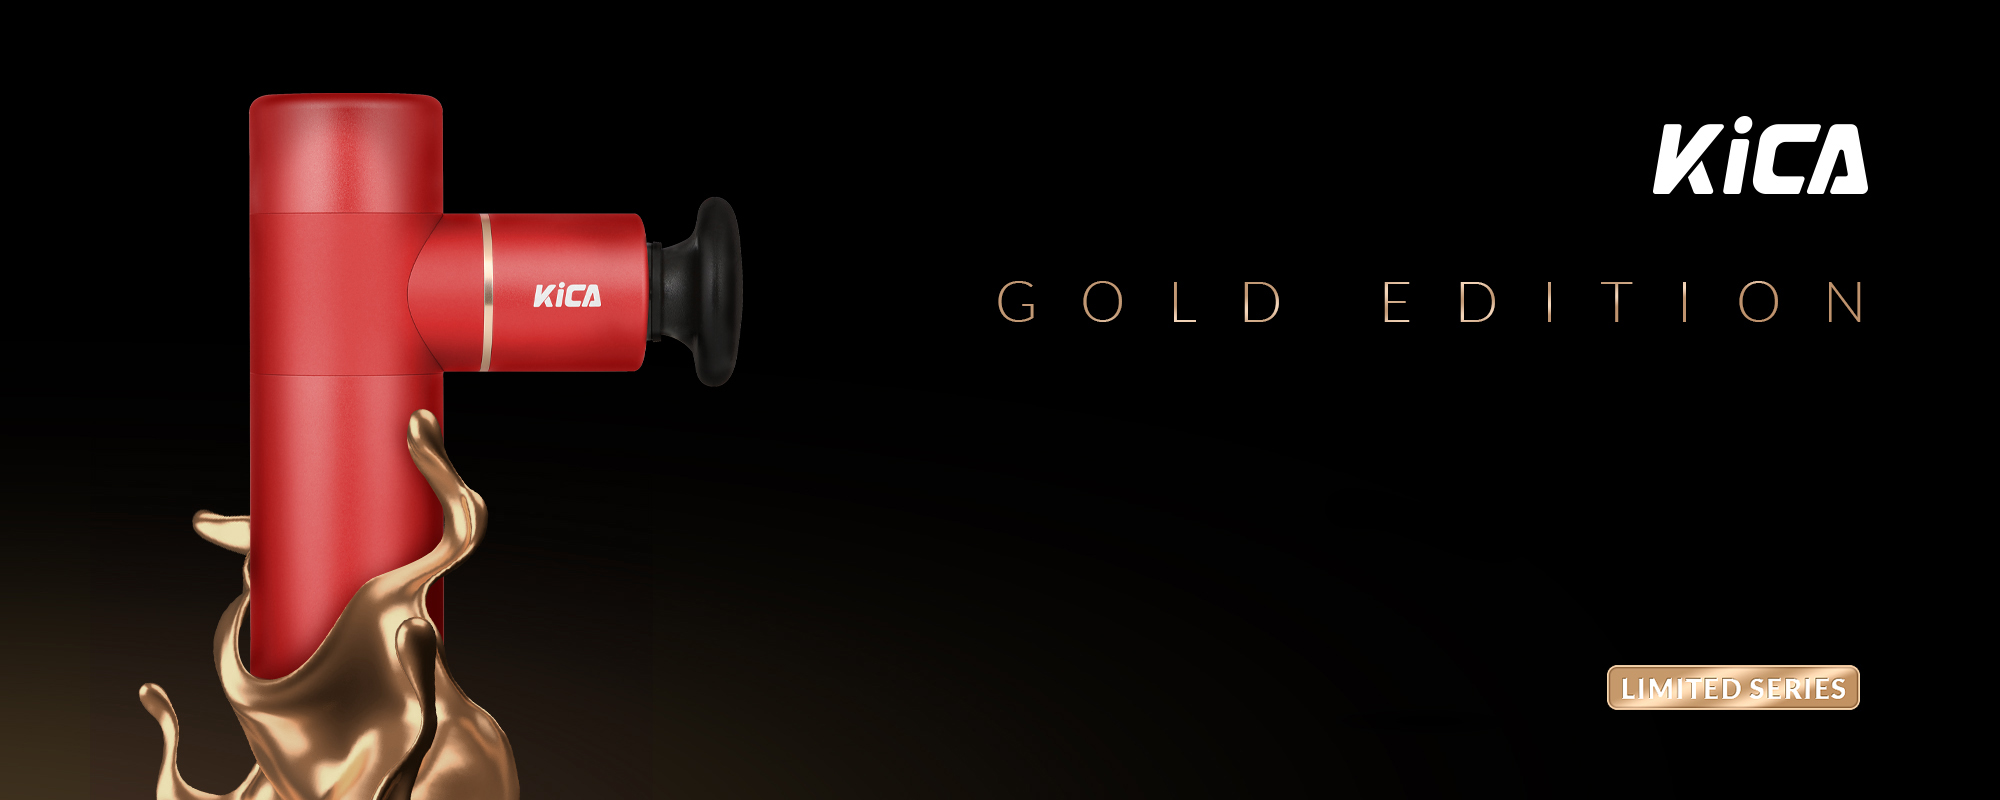 Masażer wibracyjny FeiyuTech KiCA Gold Edition - czerwony